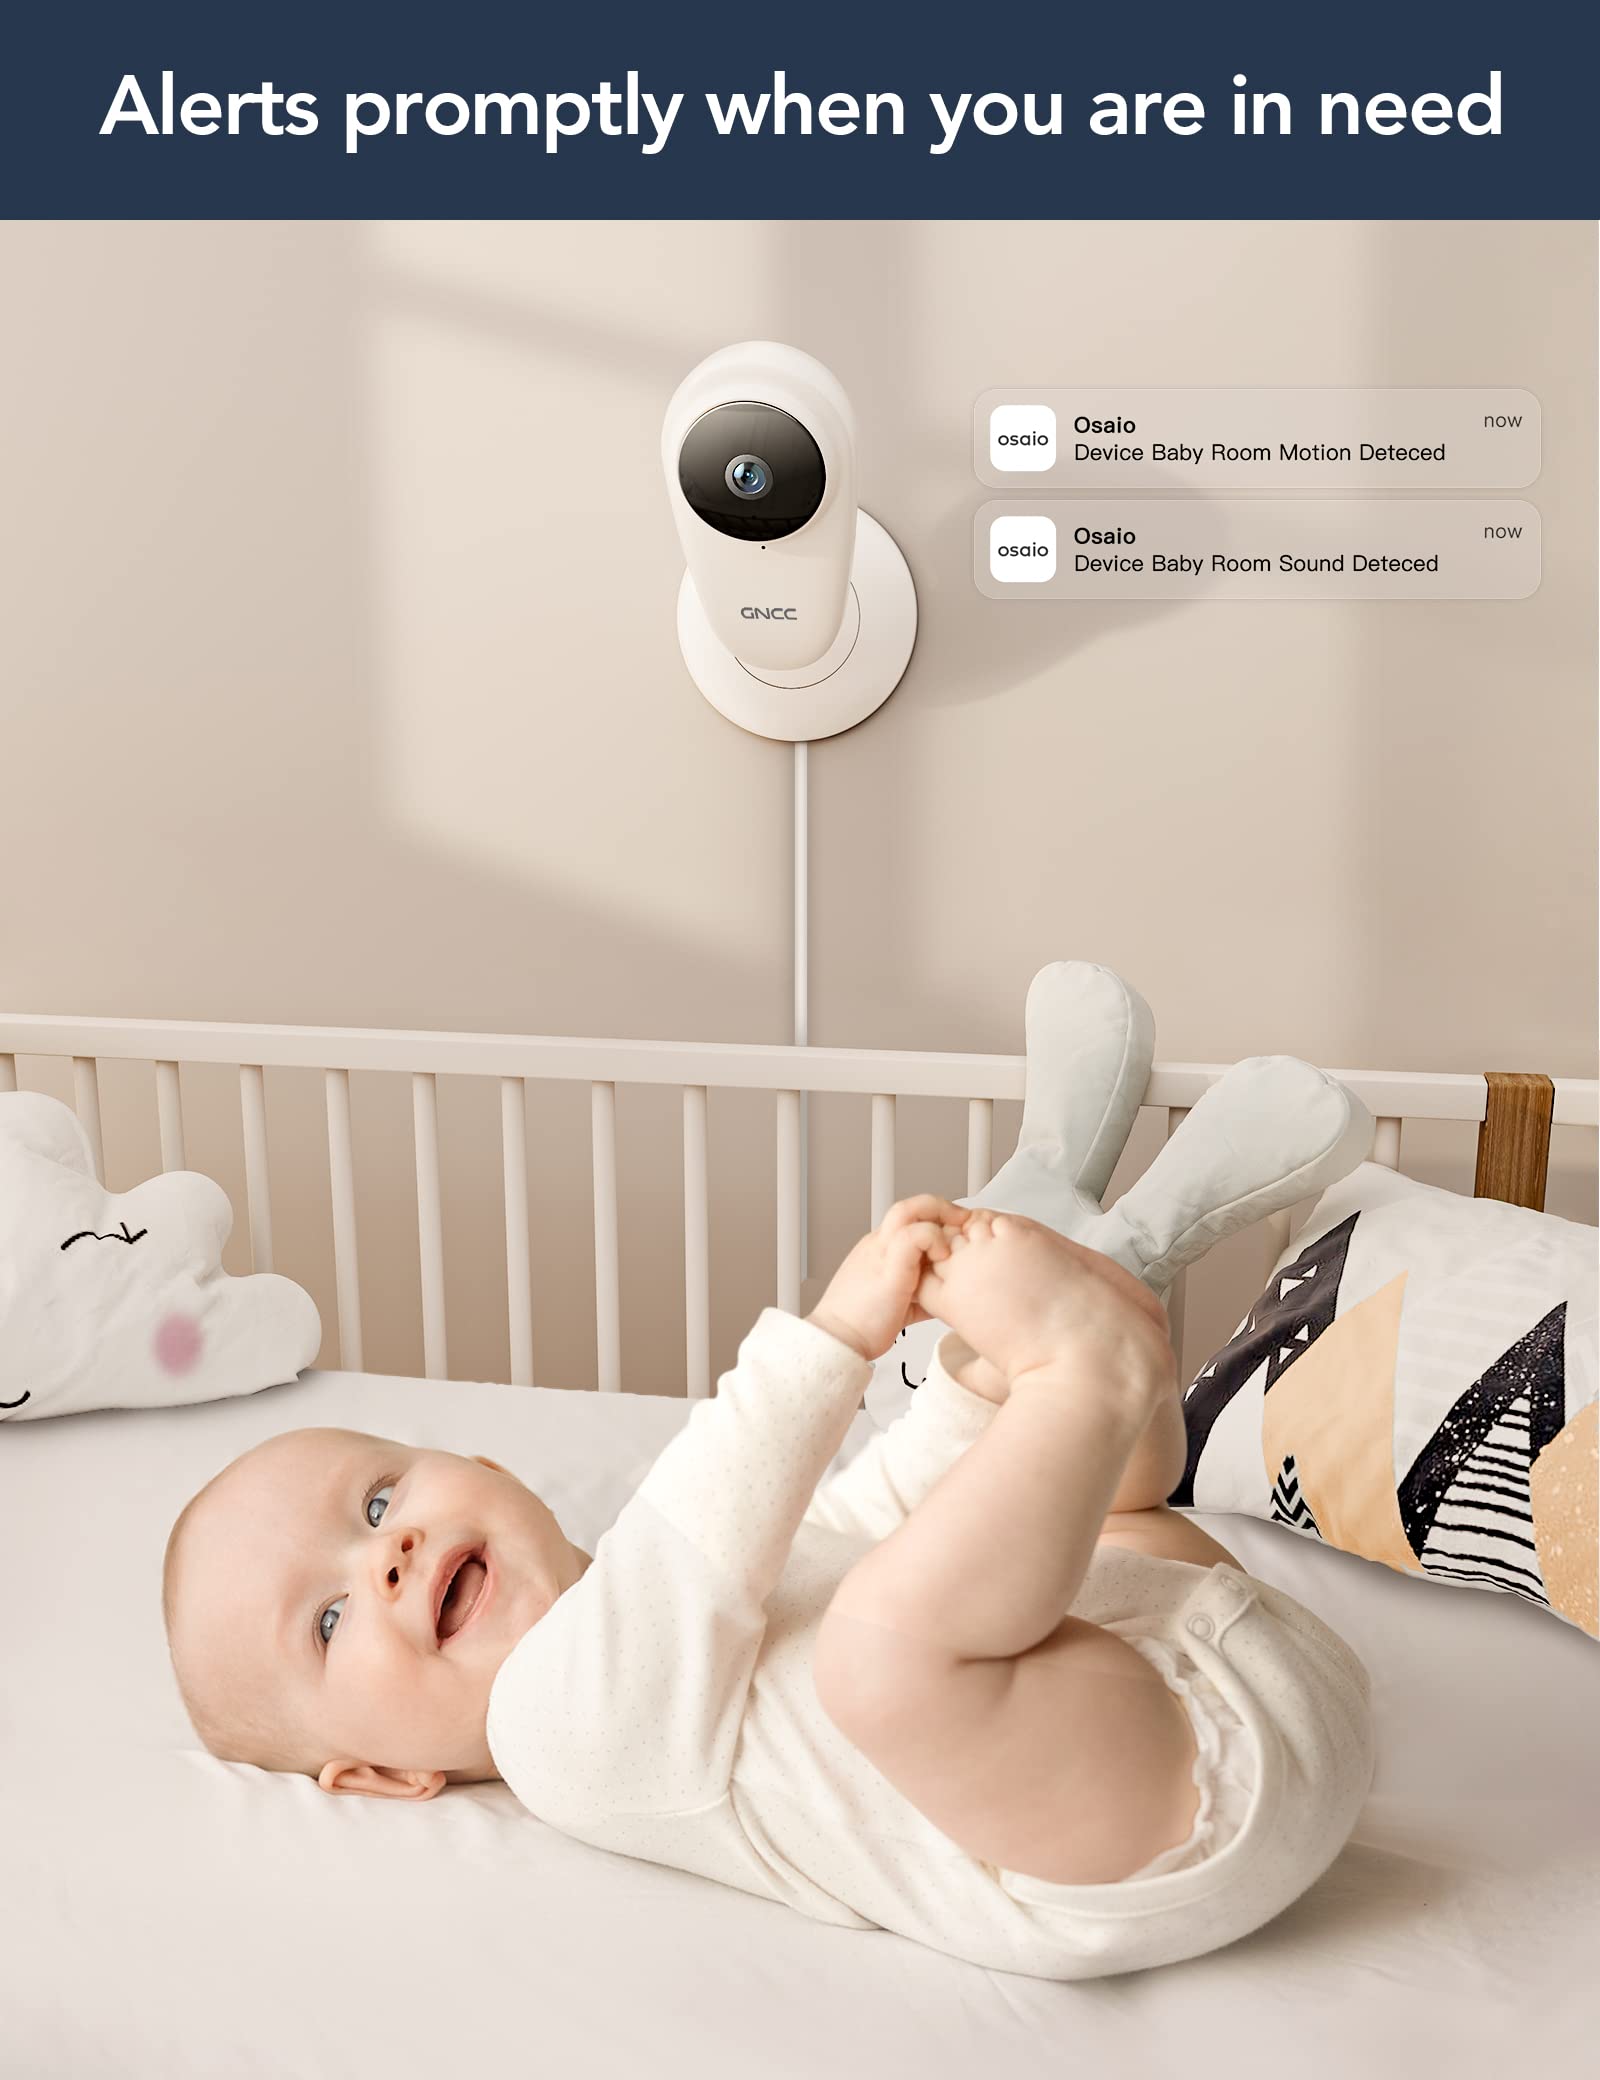 Gncc caméra de surveillance 1080p intérieures gc2, babyphone vidéo moniteur  pour bébé avec vision nocturne et détection de mouvement - Conforama